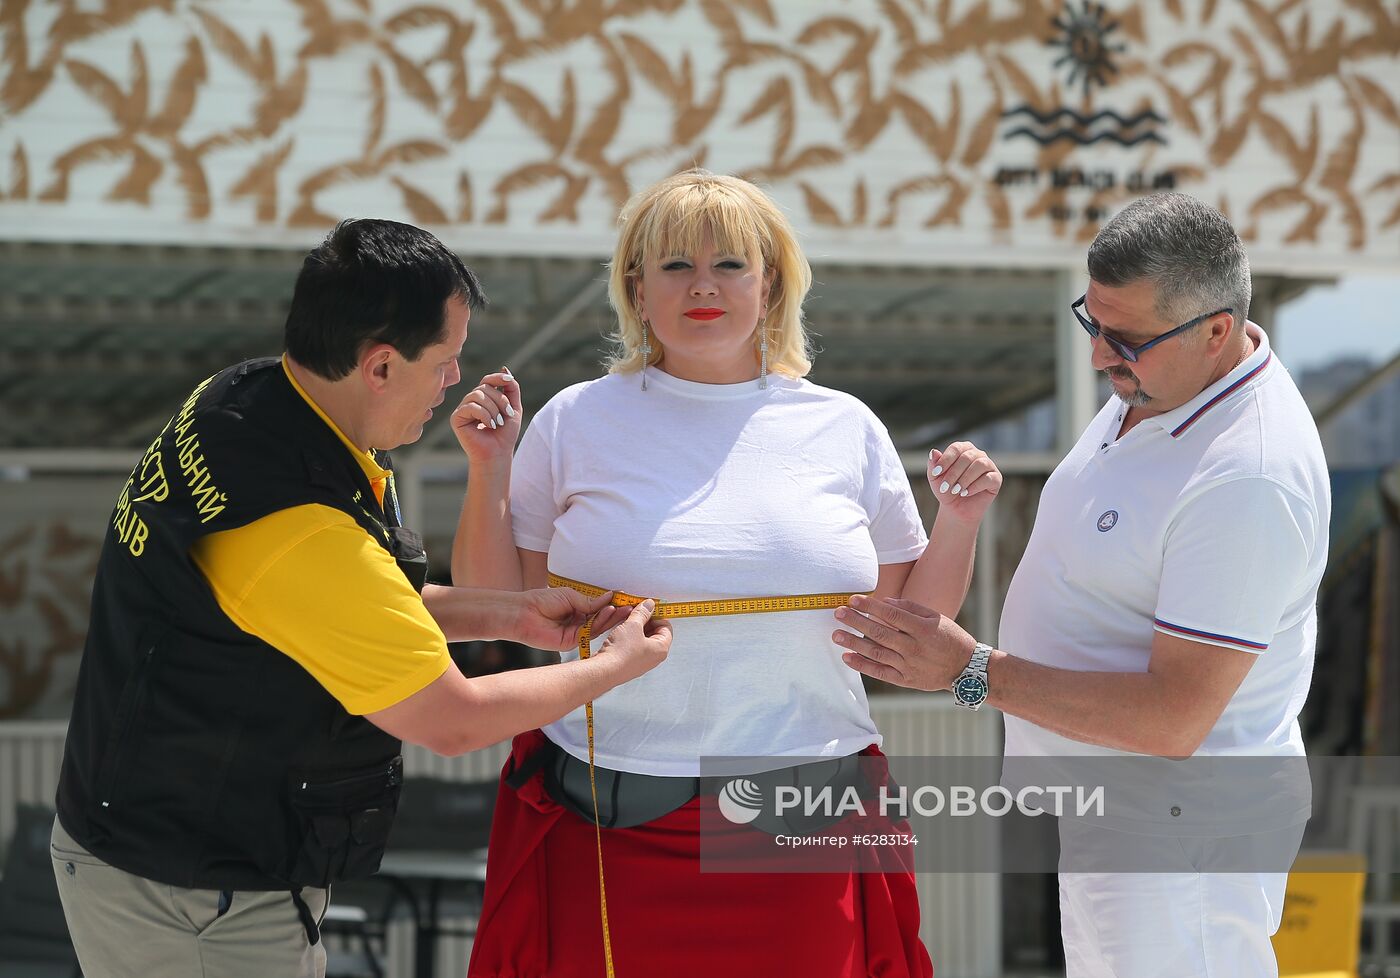 Регистрация рекорда самой большой груди на Украине